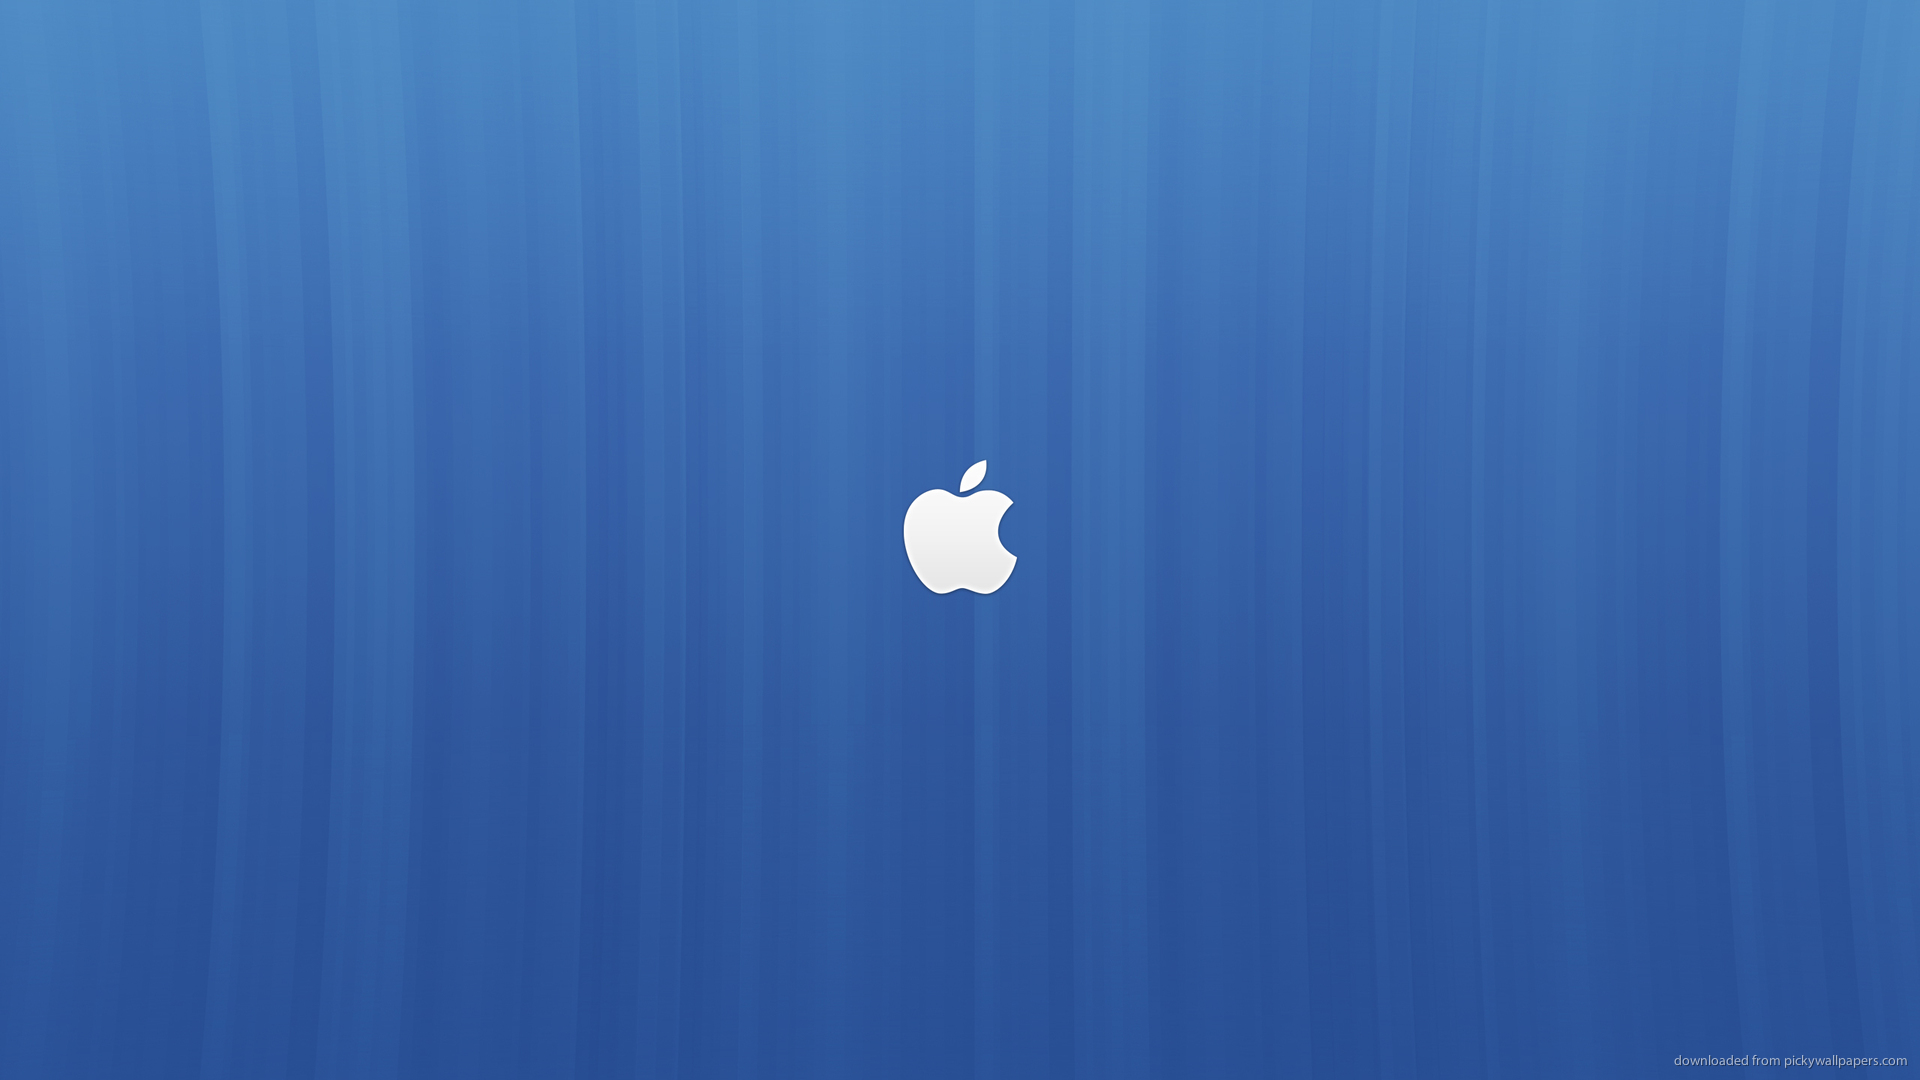 Hình nền Blue Apple: Hình nền Blue Apple mang đến một sự tươi mới và mát mẻ cho màn hình của bạn. Nếu bạn đang tìm kiếm một hình nền đảm bảo sự ấn tượng cho bạn hoặc một ai đó, đây là giải pháp hoàn hảo. Khám phá ngay hình ảnh liên quan để tận hưởng sự tươi mới của Blue Apple.